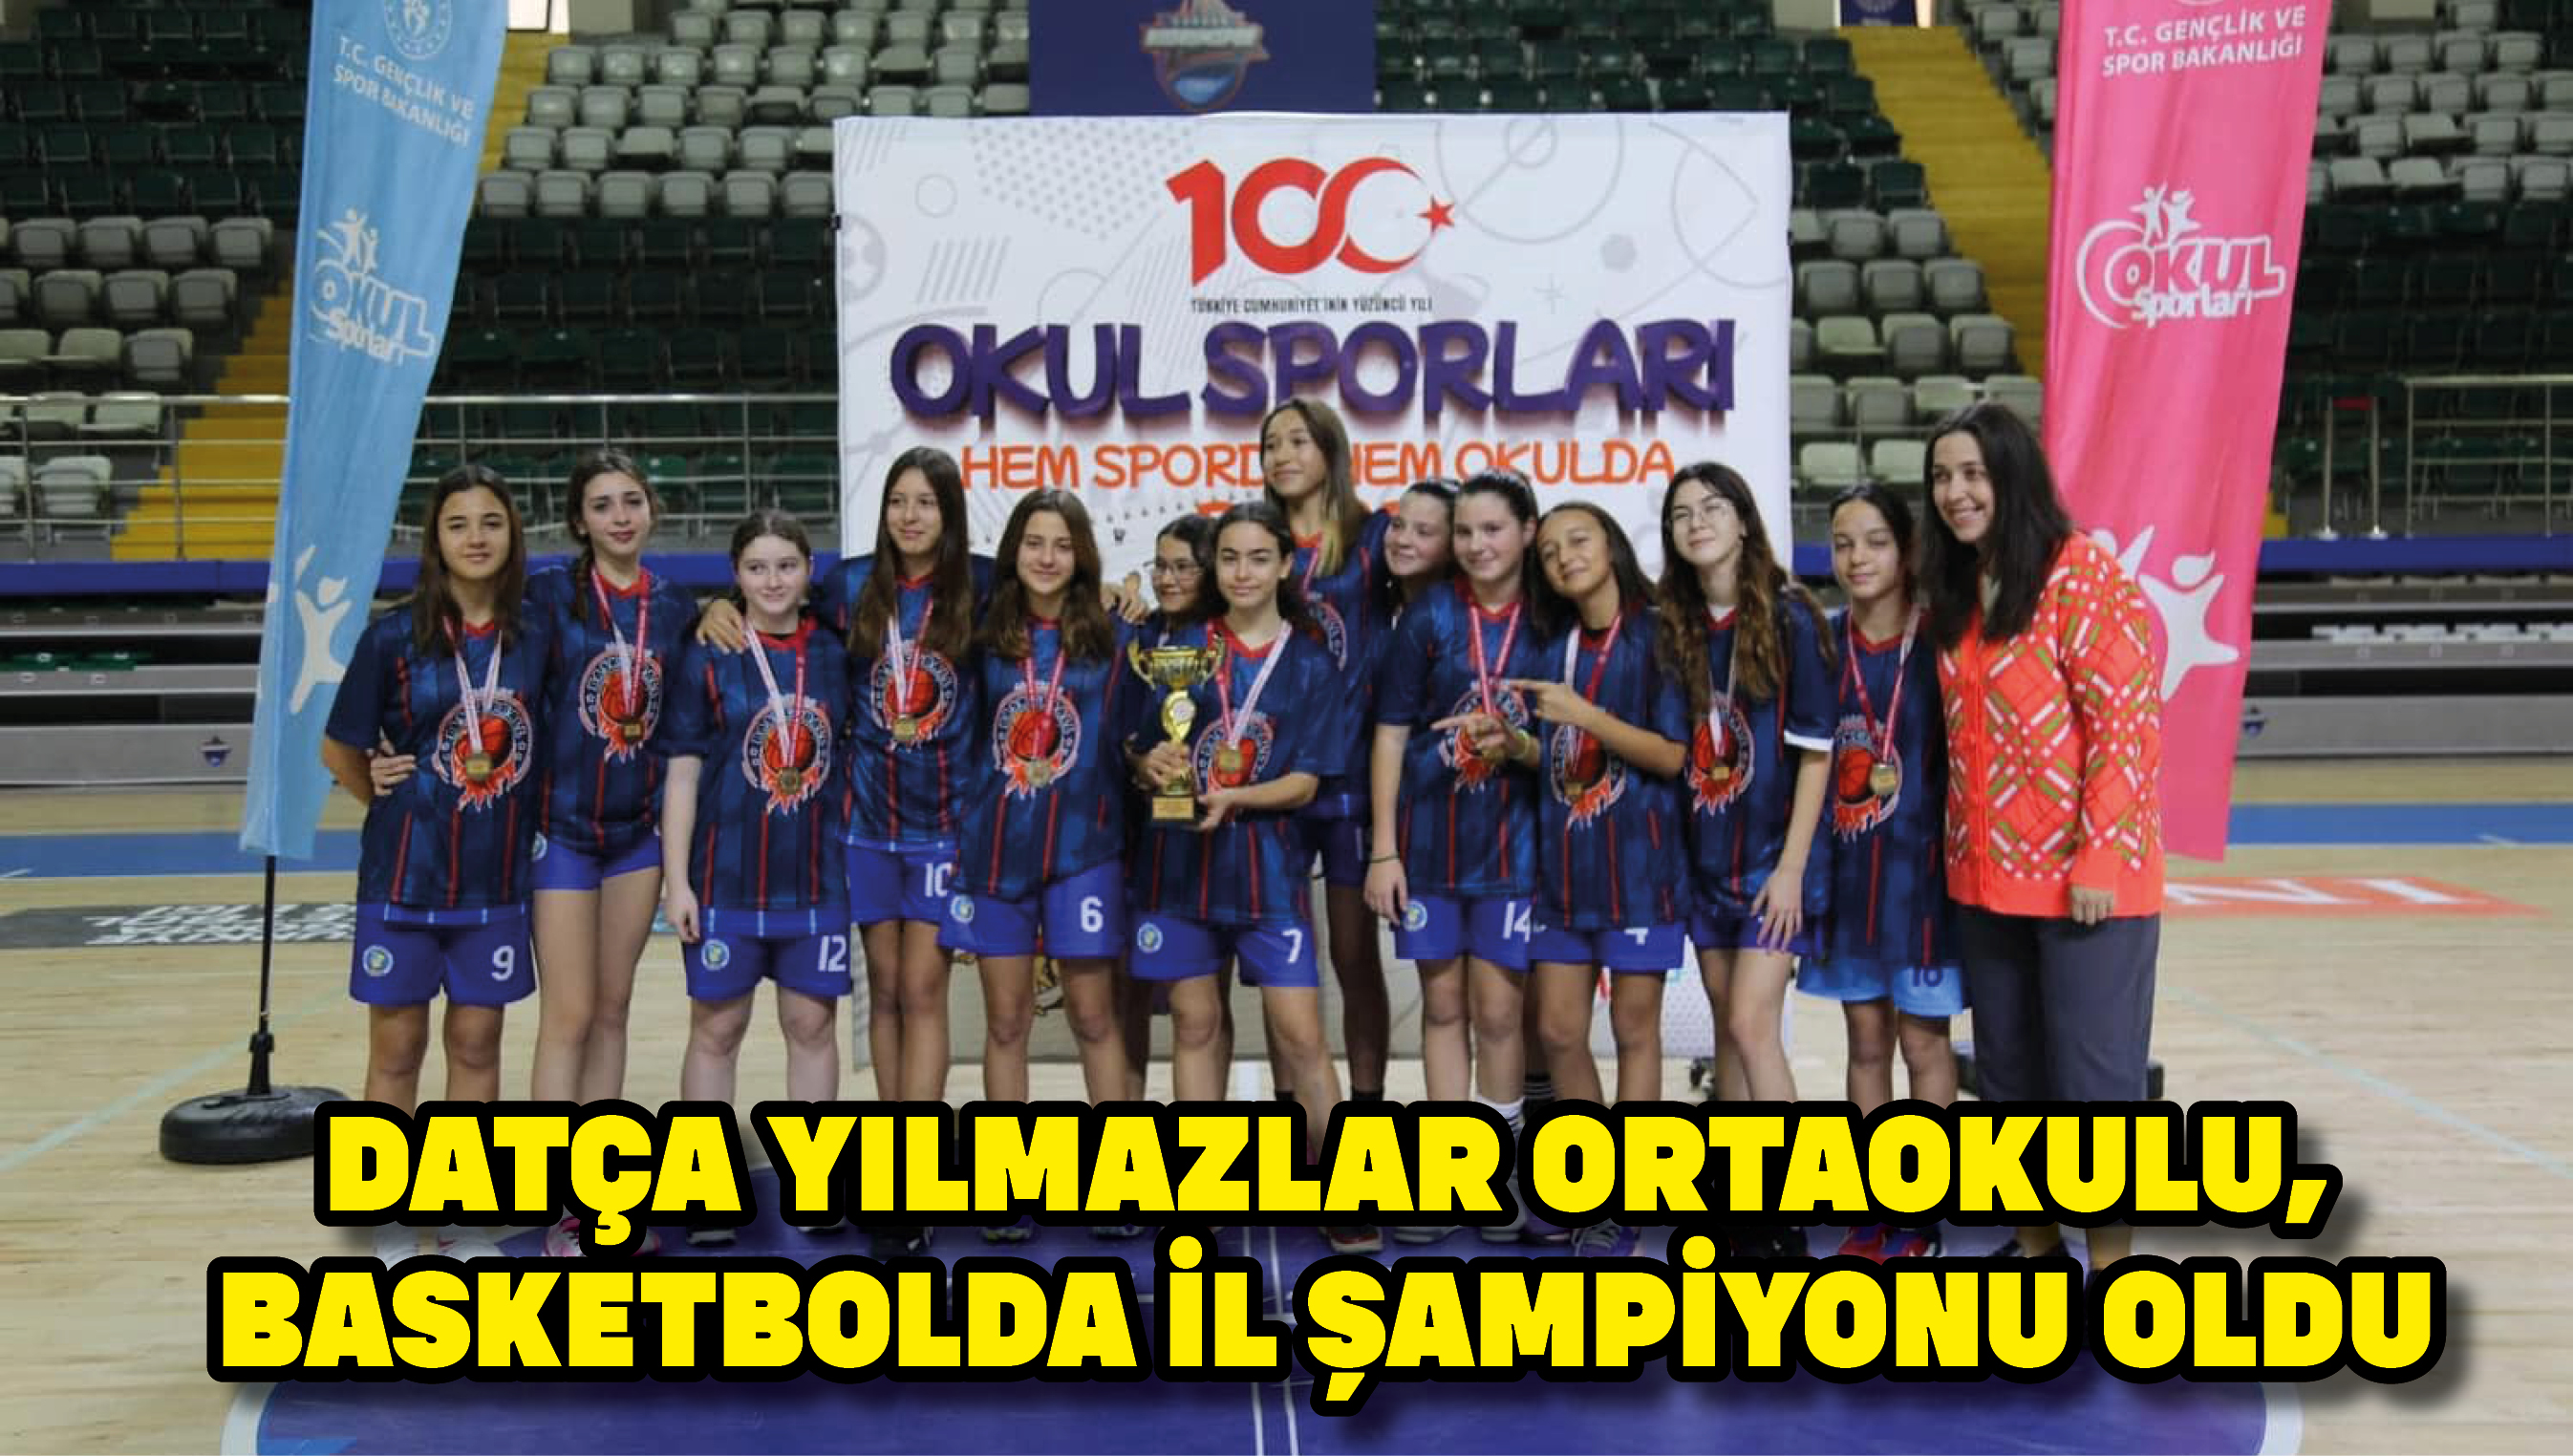 Datça Yılmazlar Ortaokulu, basketbolda il şampiyonu oldu